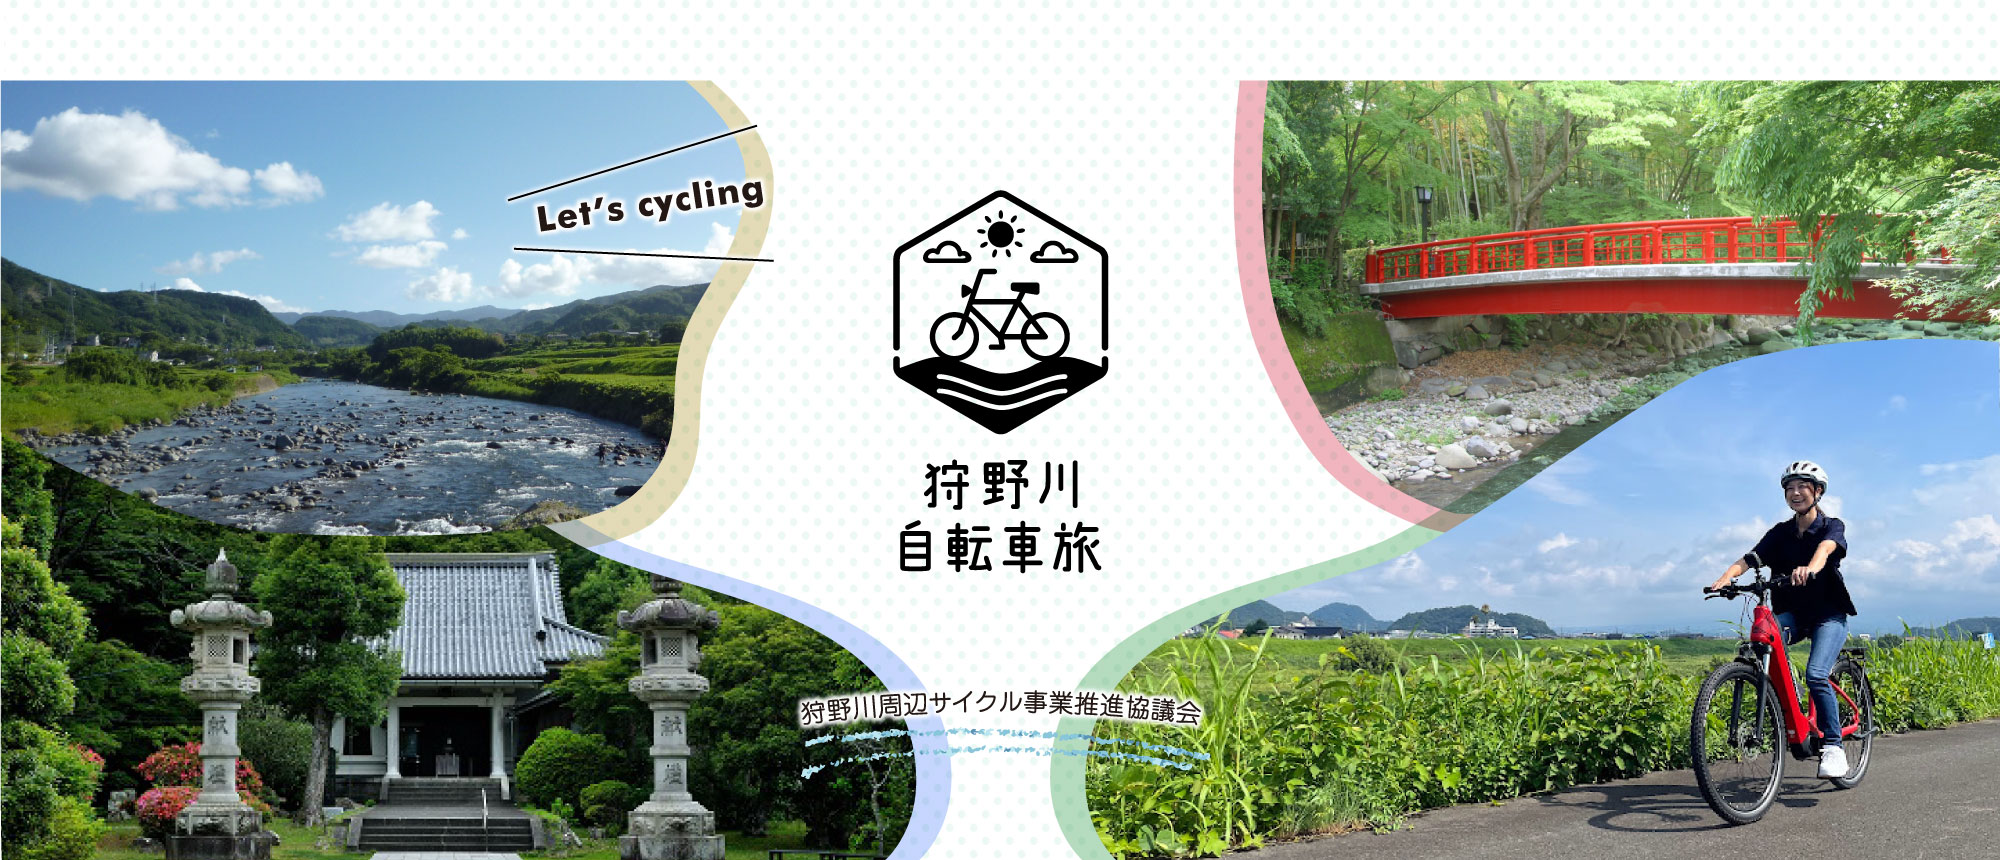 狩野川自転車旅